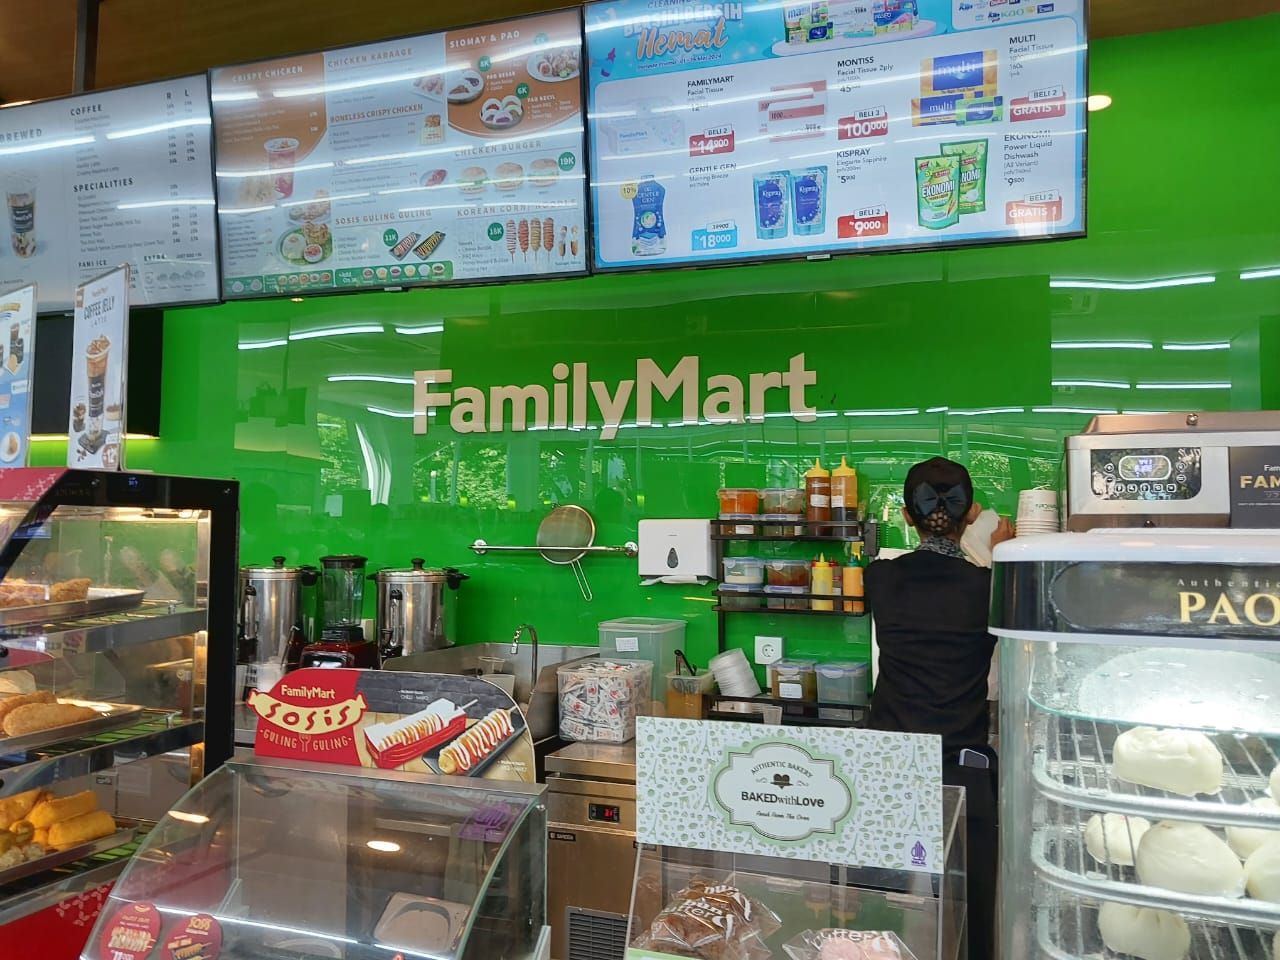 FamilyMart Memperluas Jangkauan: Pembukaan Cabang Terbaru di Graha Pena, Surabaya